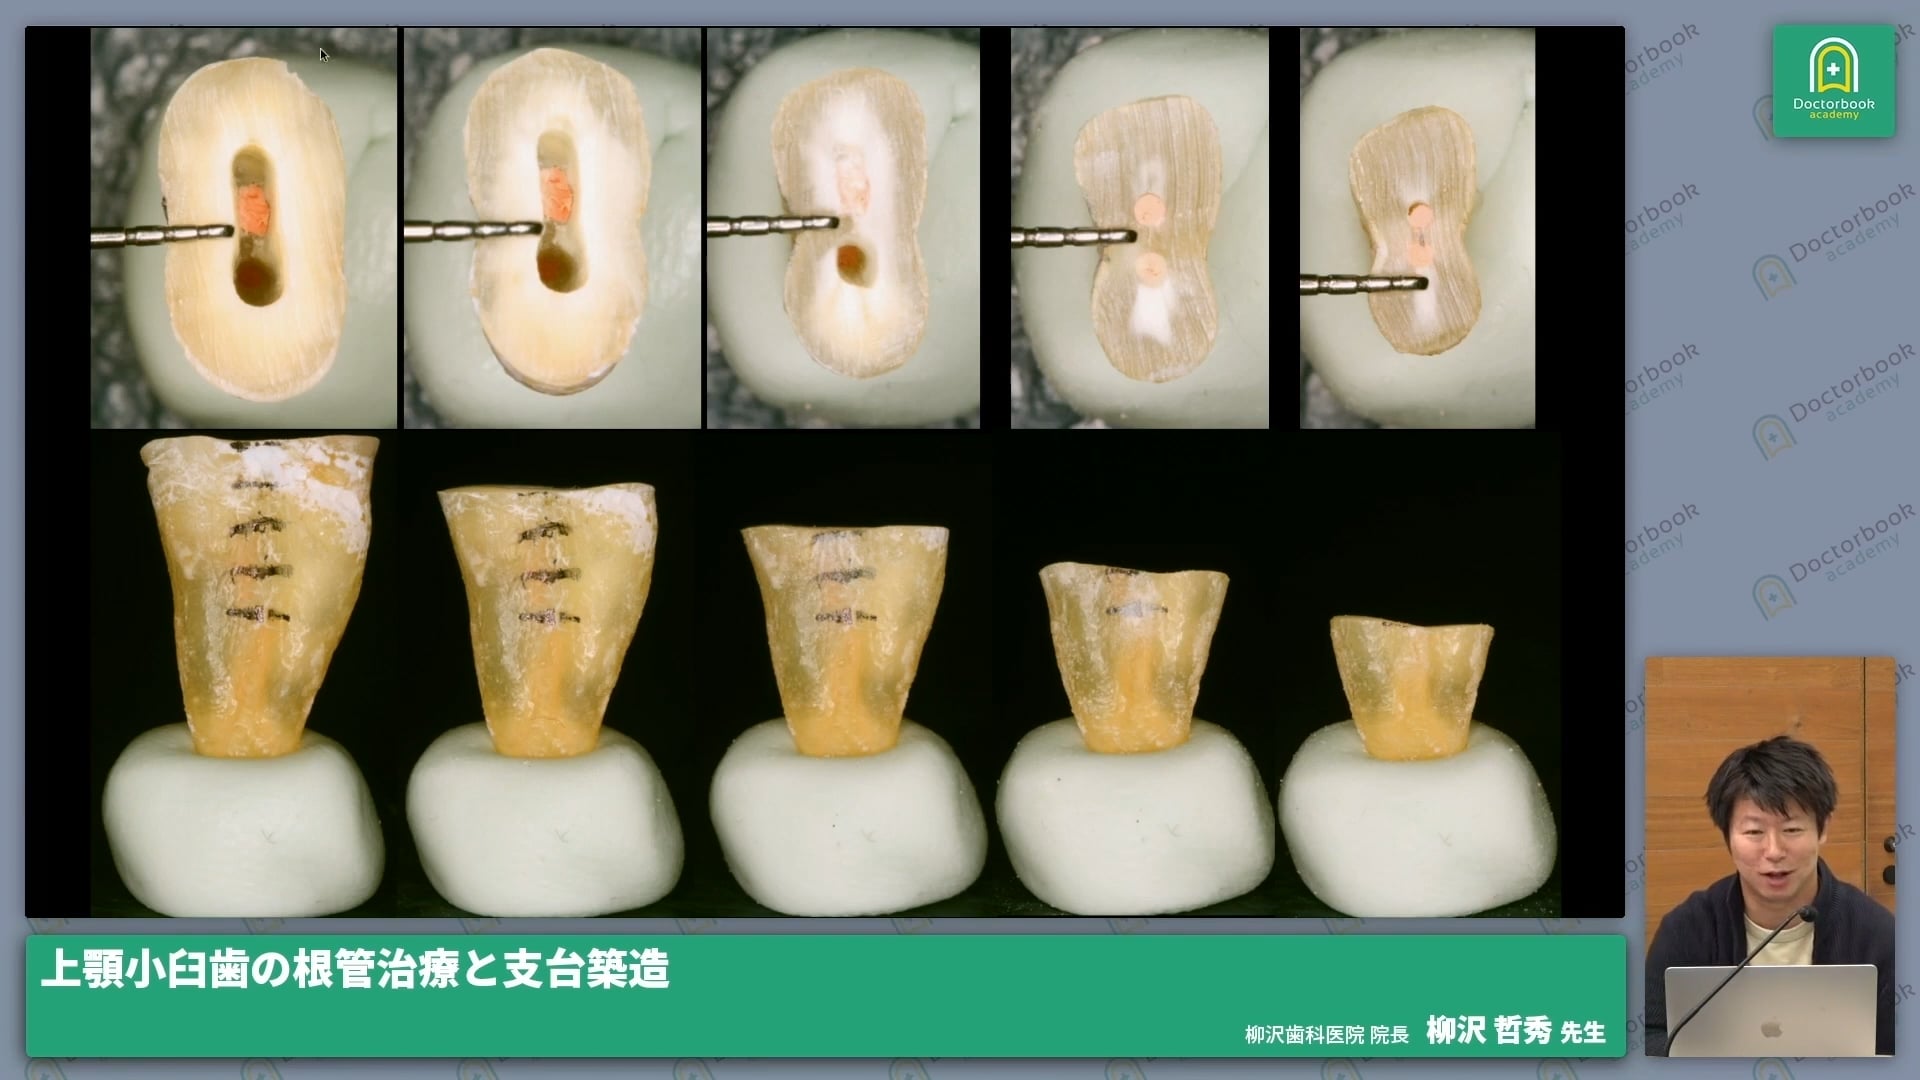 上顎小臼歯の根管治療と支台築造